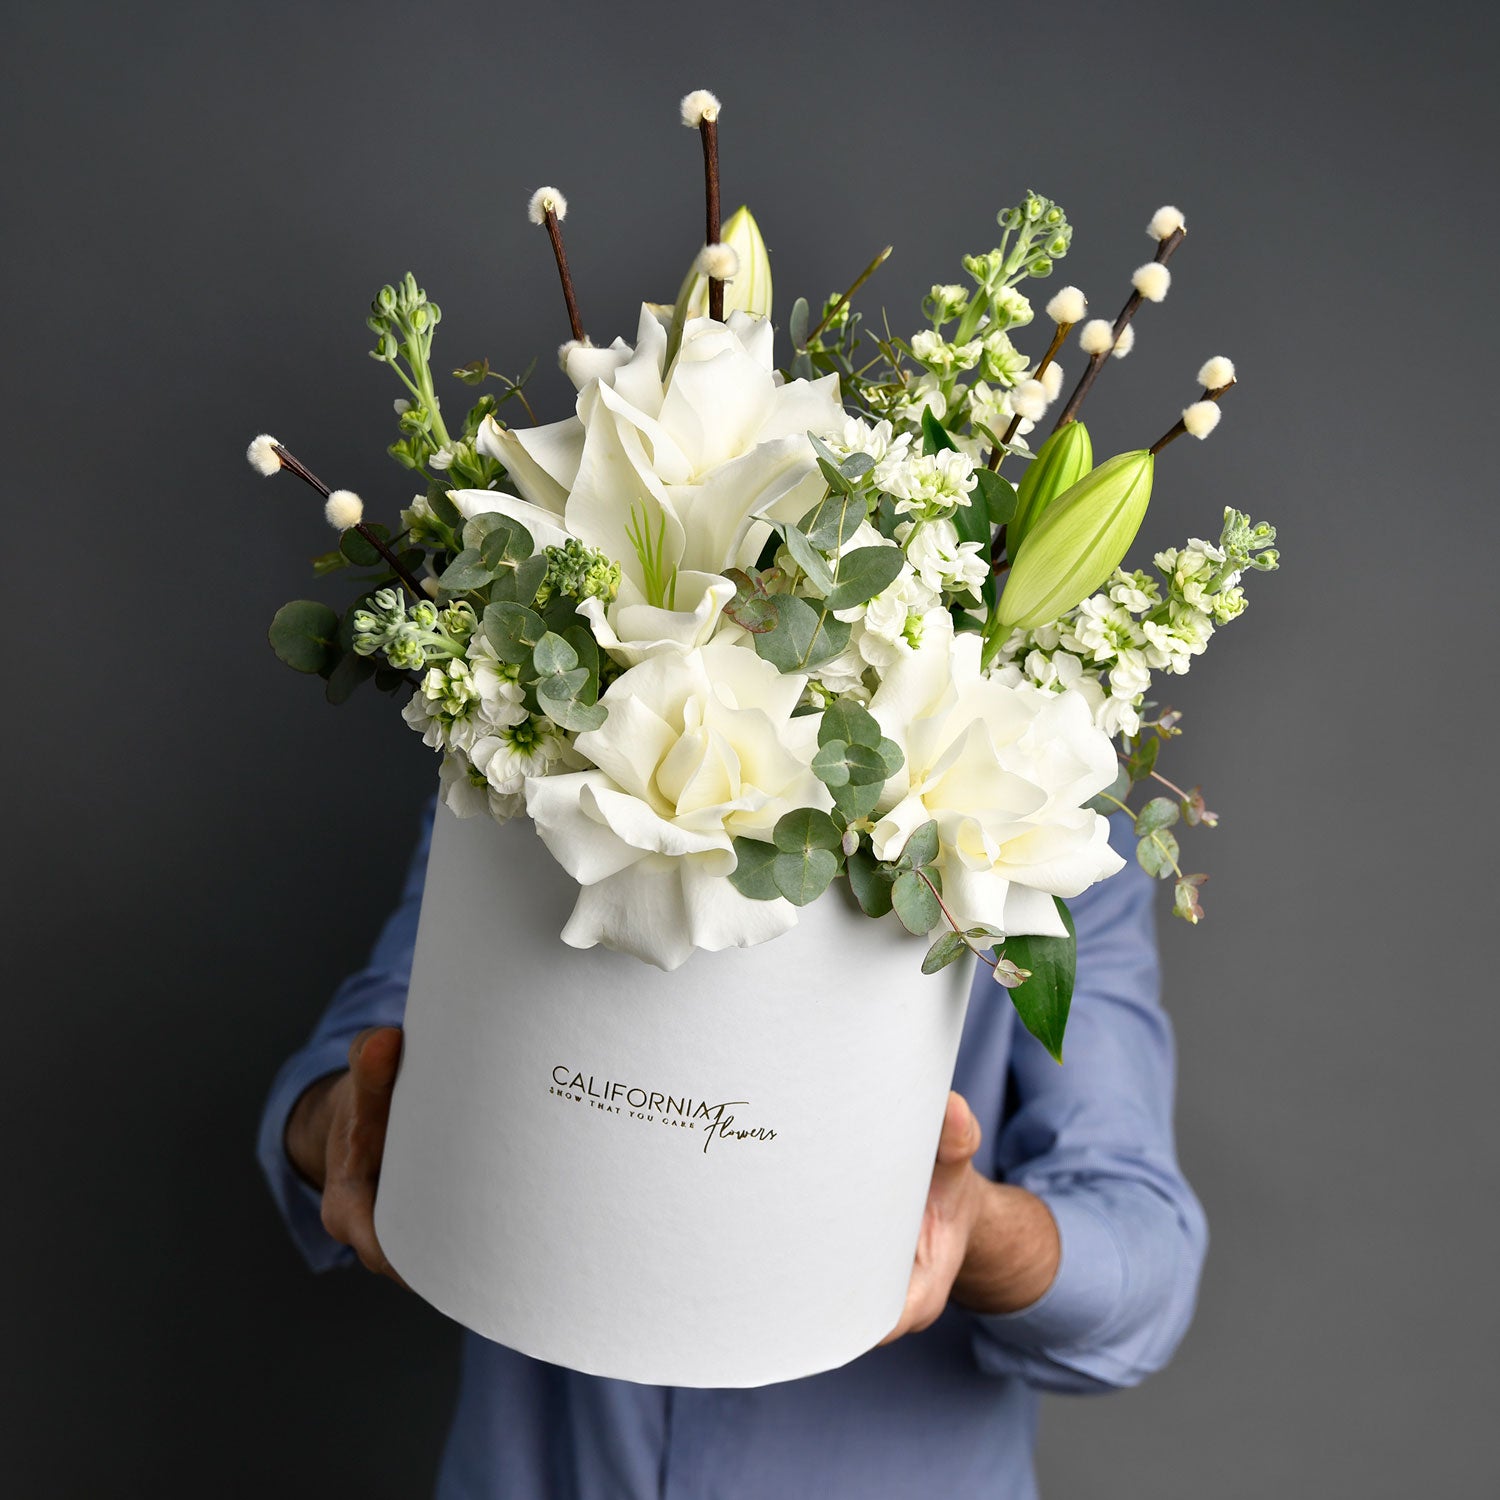 Aranjament floral in cutie alba cu trandafiri speciali si crini